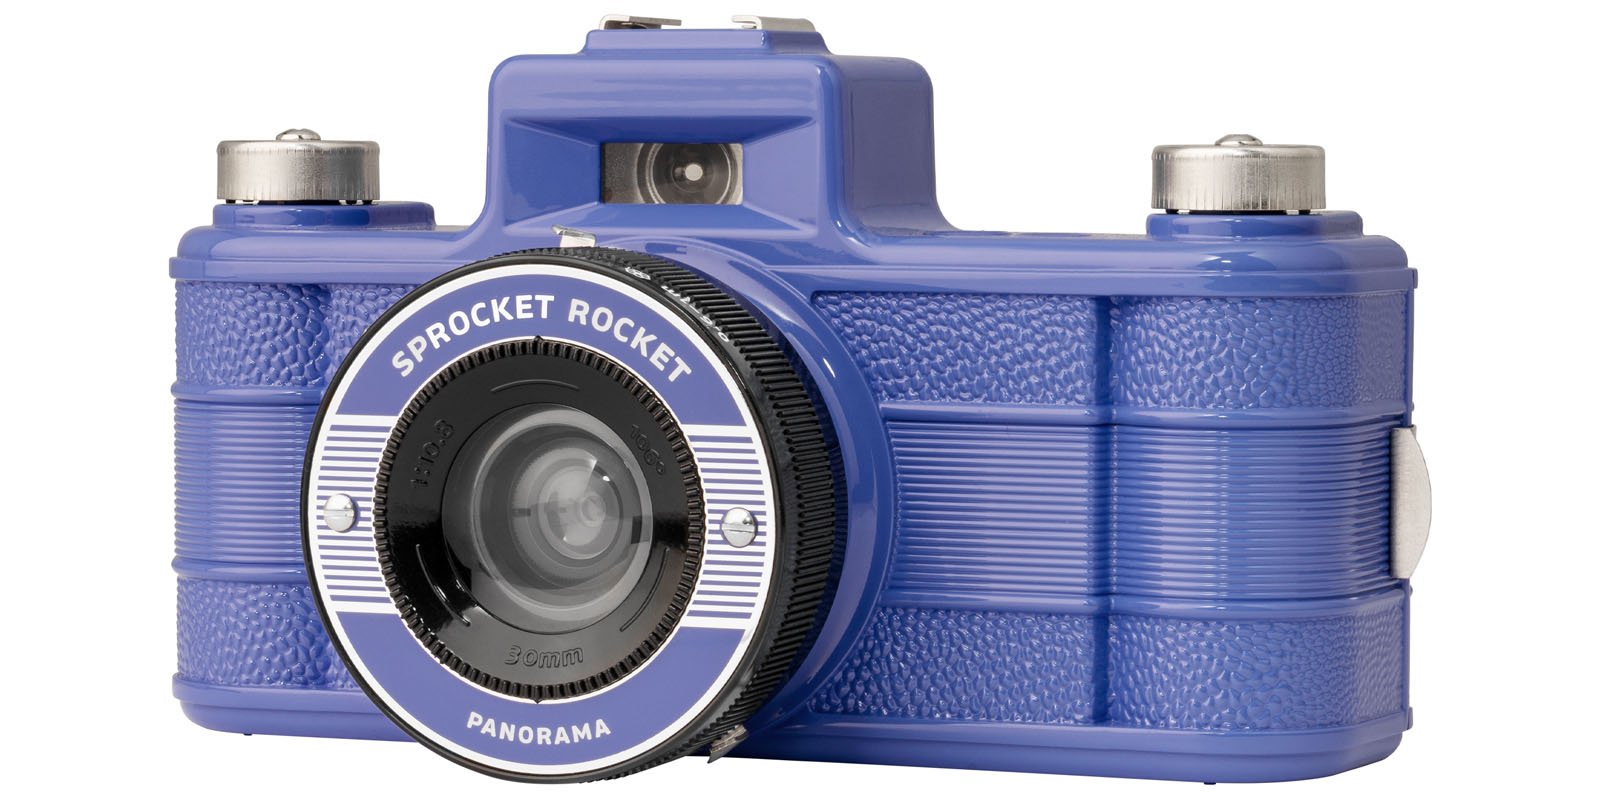 Lomography Sprocket Rocket Pano Film Camera Gets Colorful Facelift 